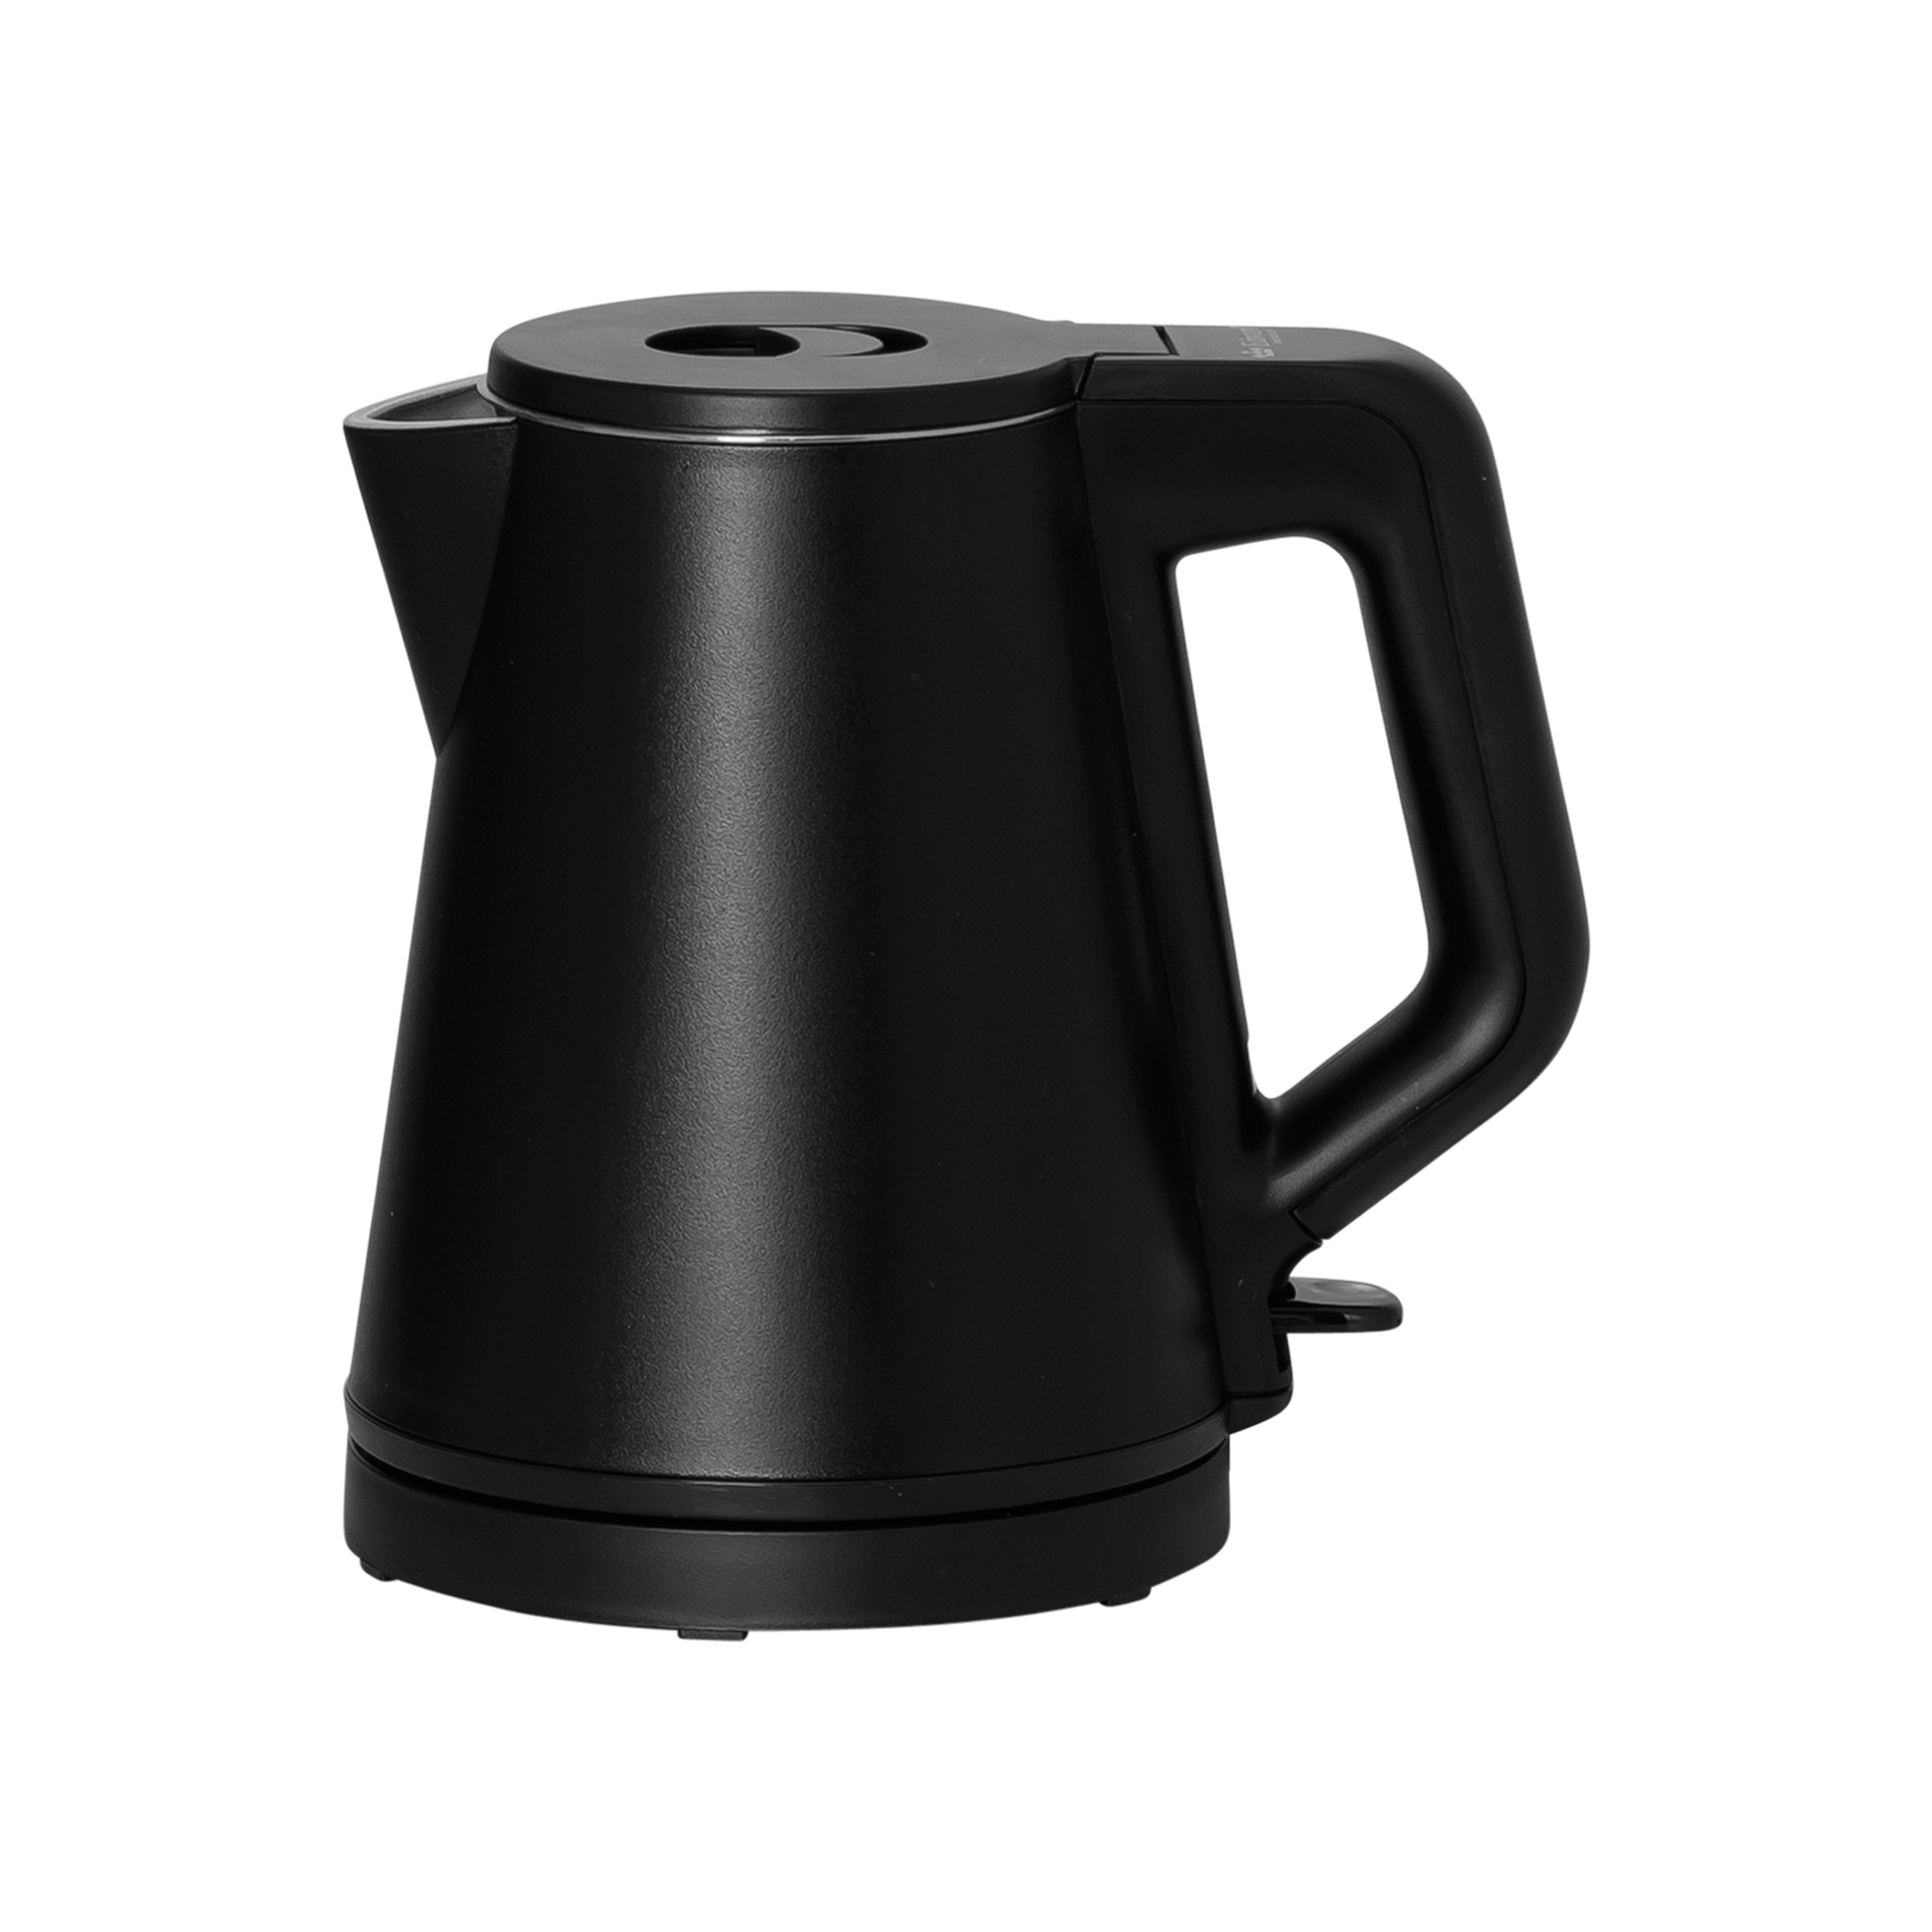 Water kettle Edward 0,6 l, Black